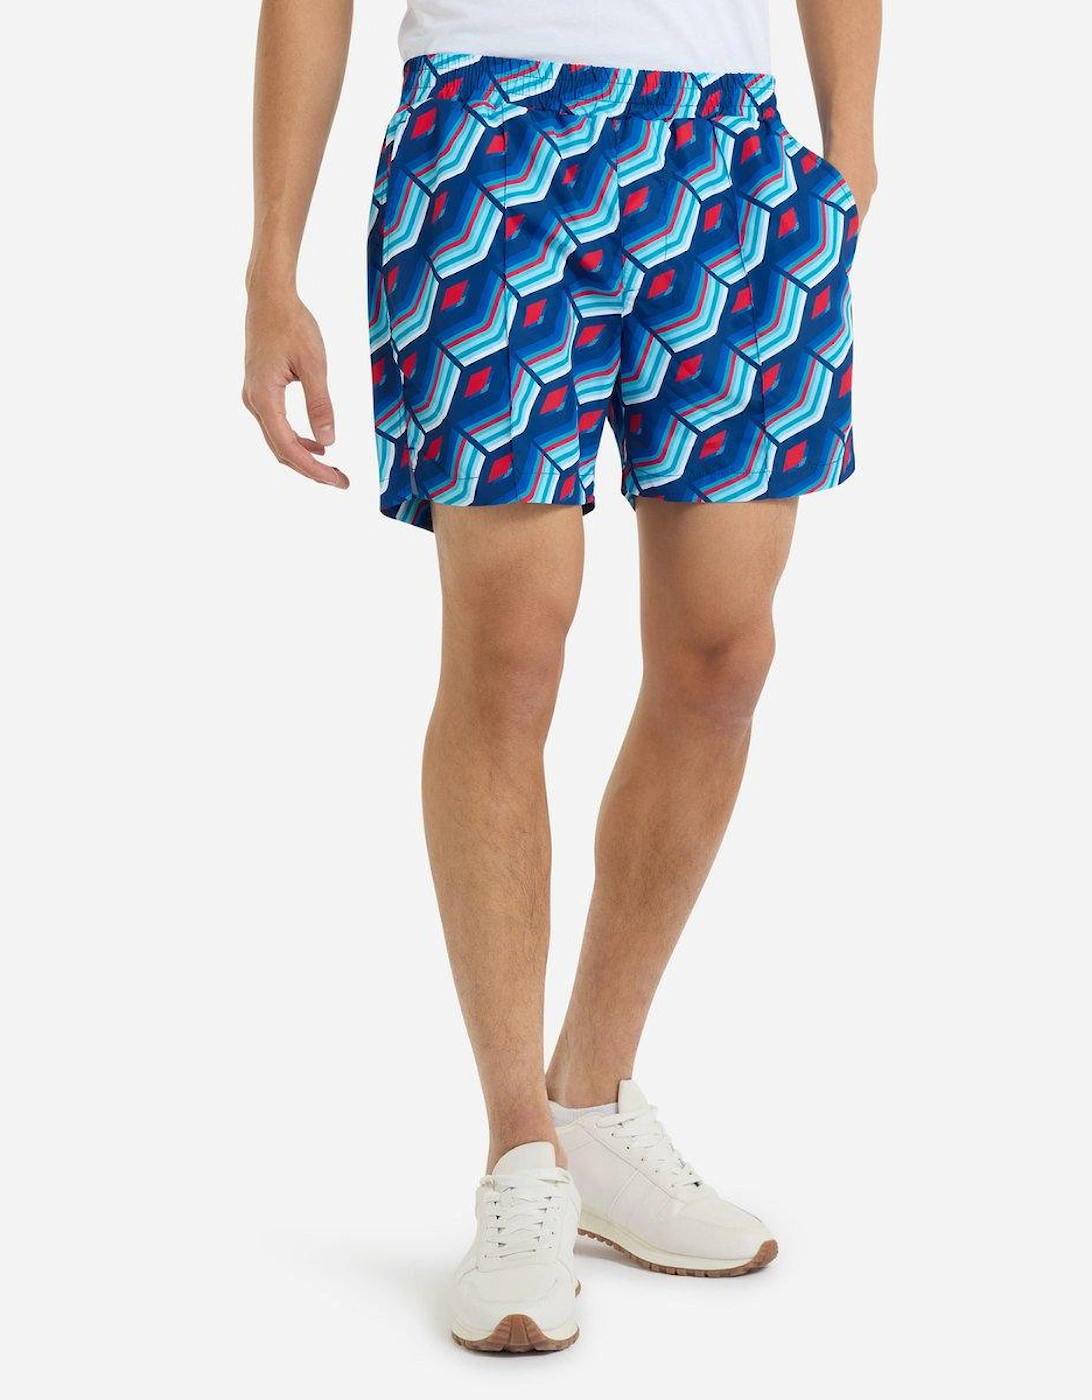 Mens Printed Swim Shorts, 2 of 1